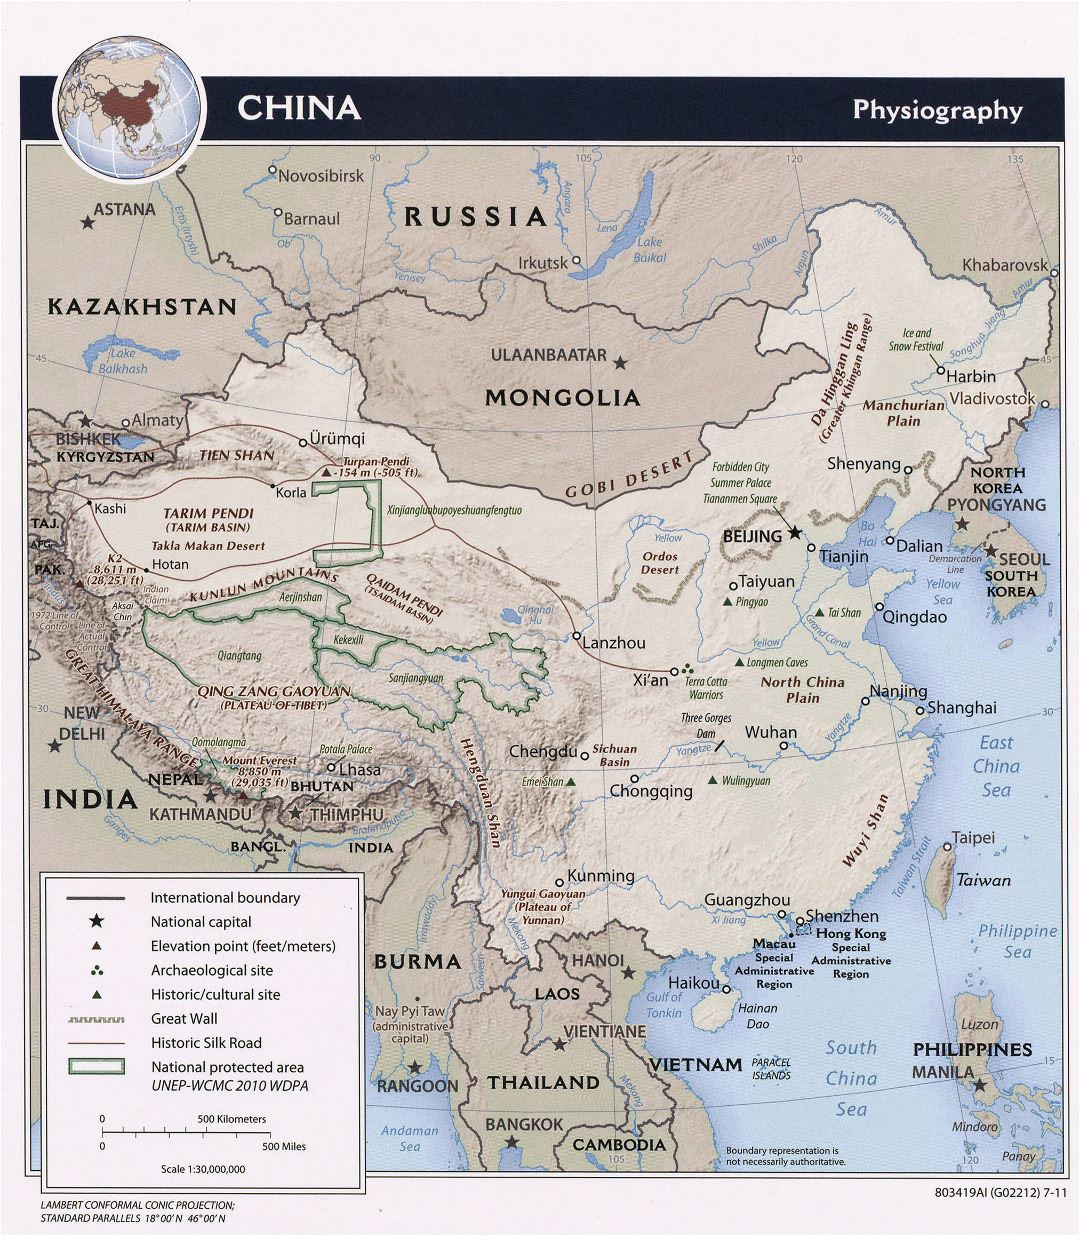 Grande detallado mapa de fisiografía de China - 2011